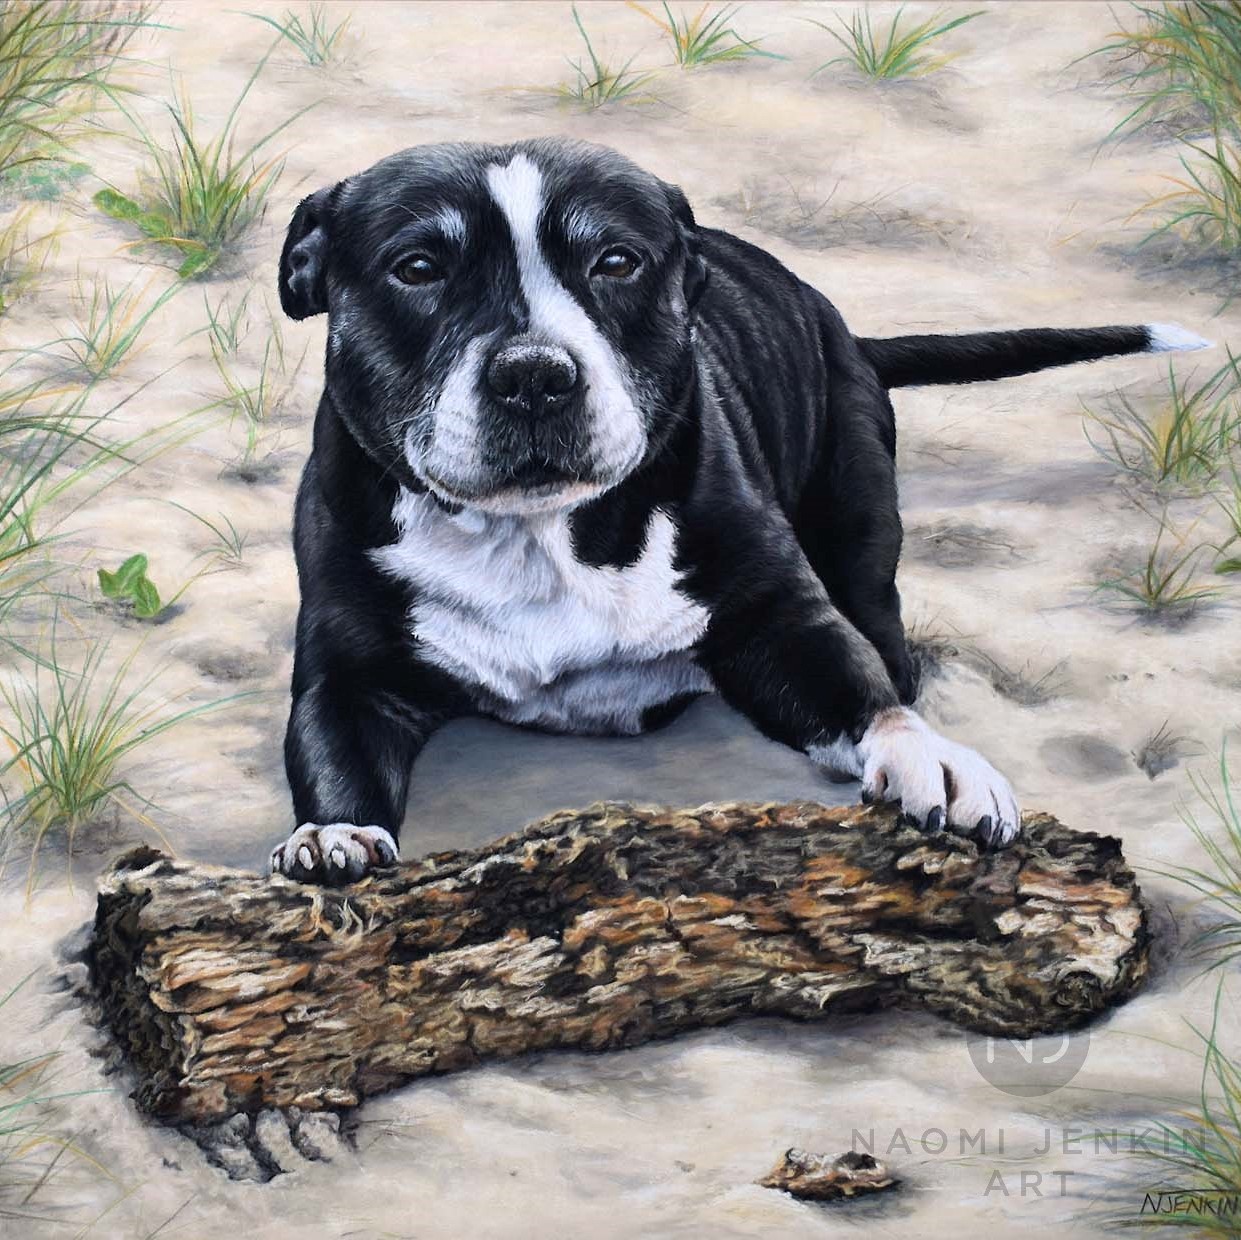 Staffordshire Bull Terrier portrait by pet portrait artist Naomi Jenkin.